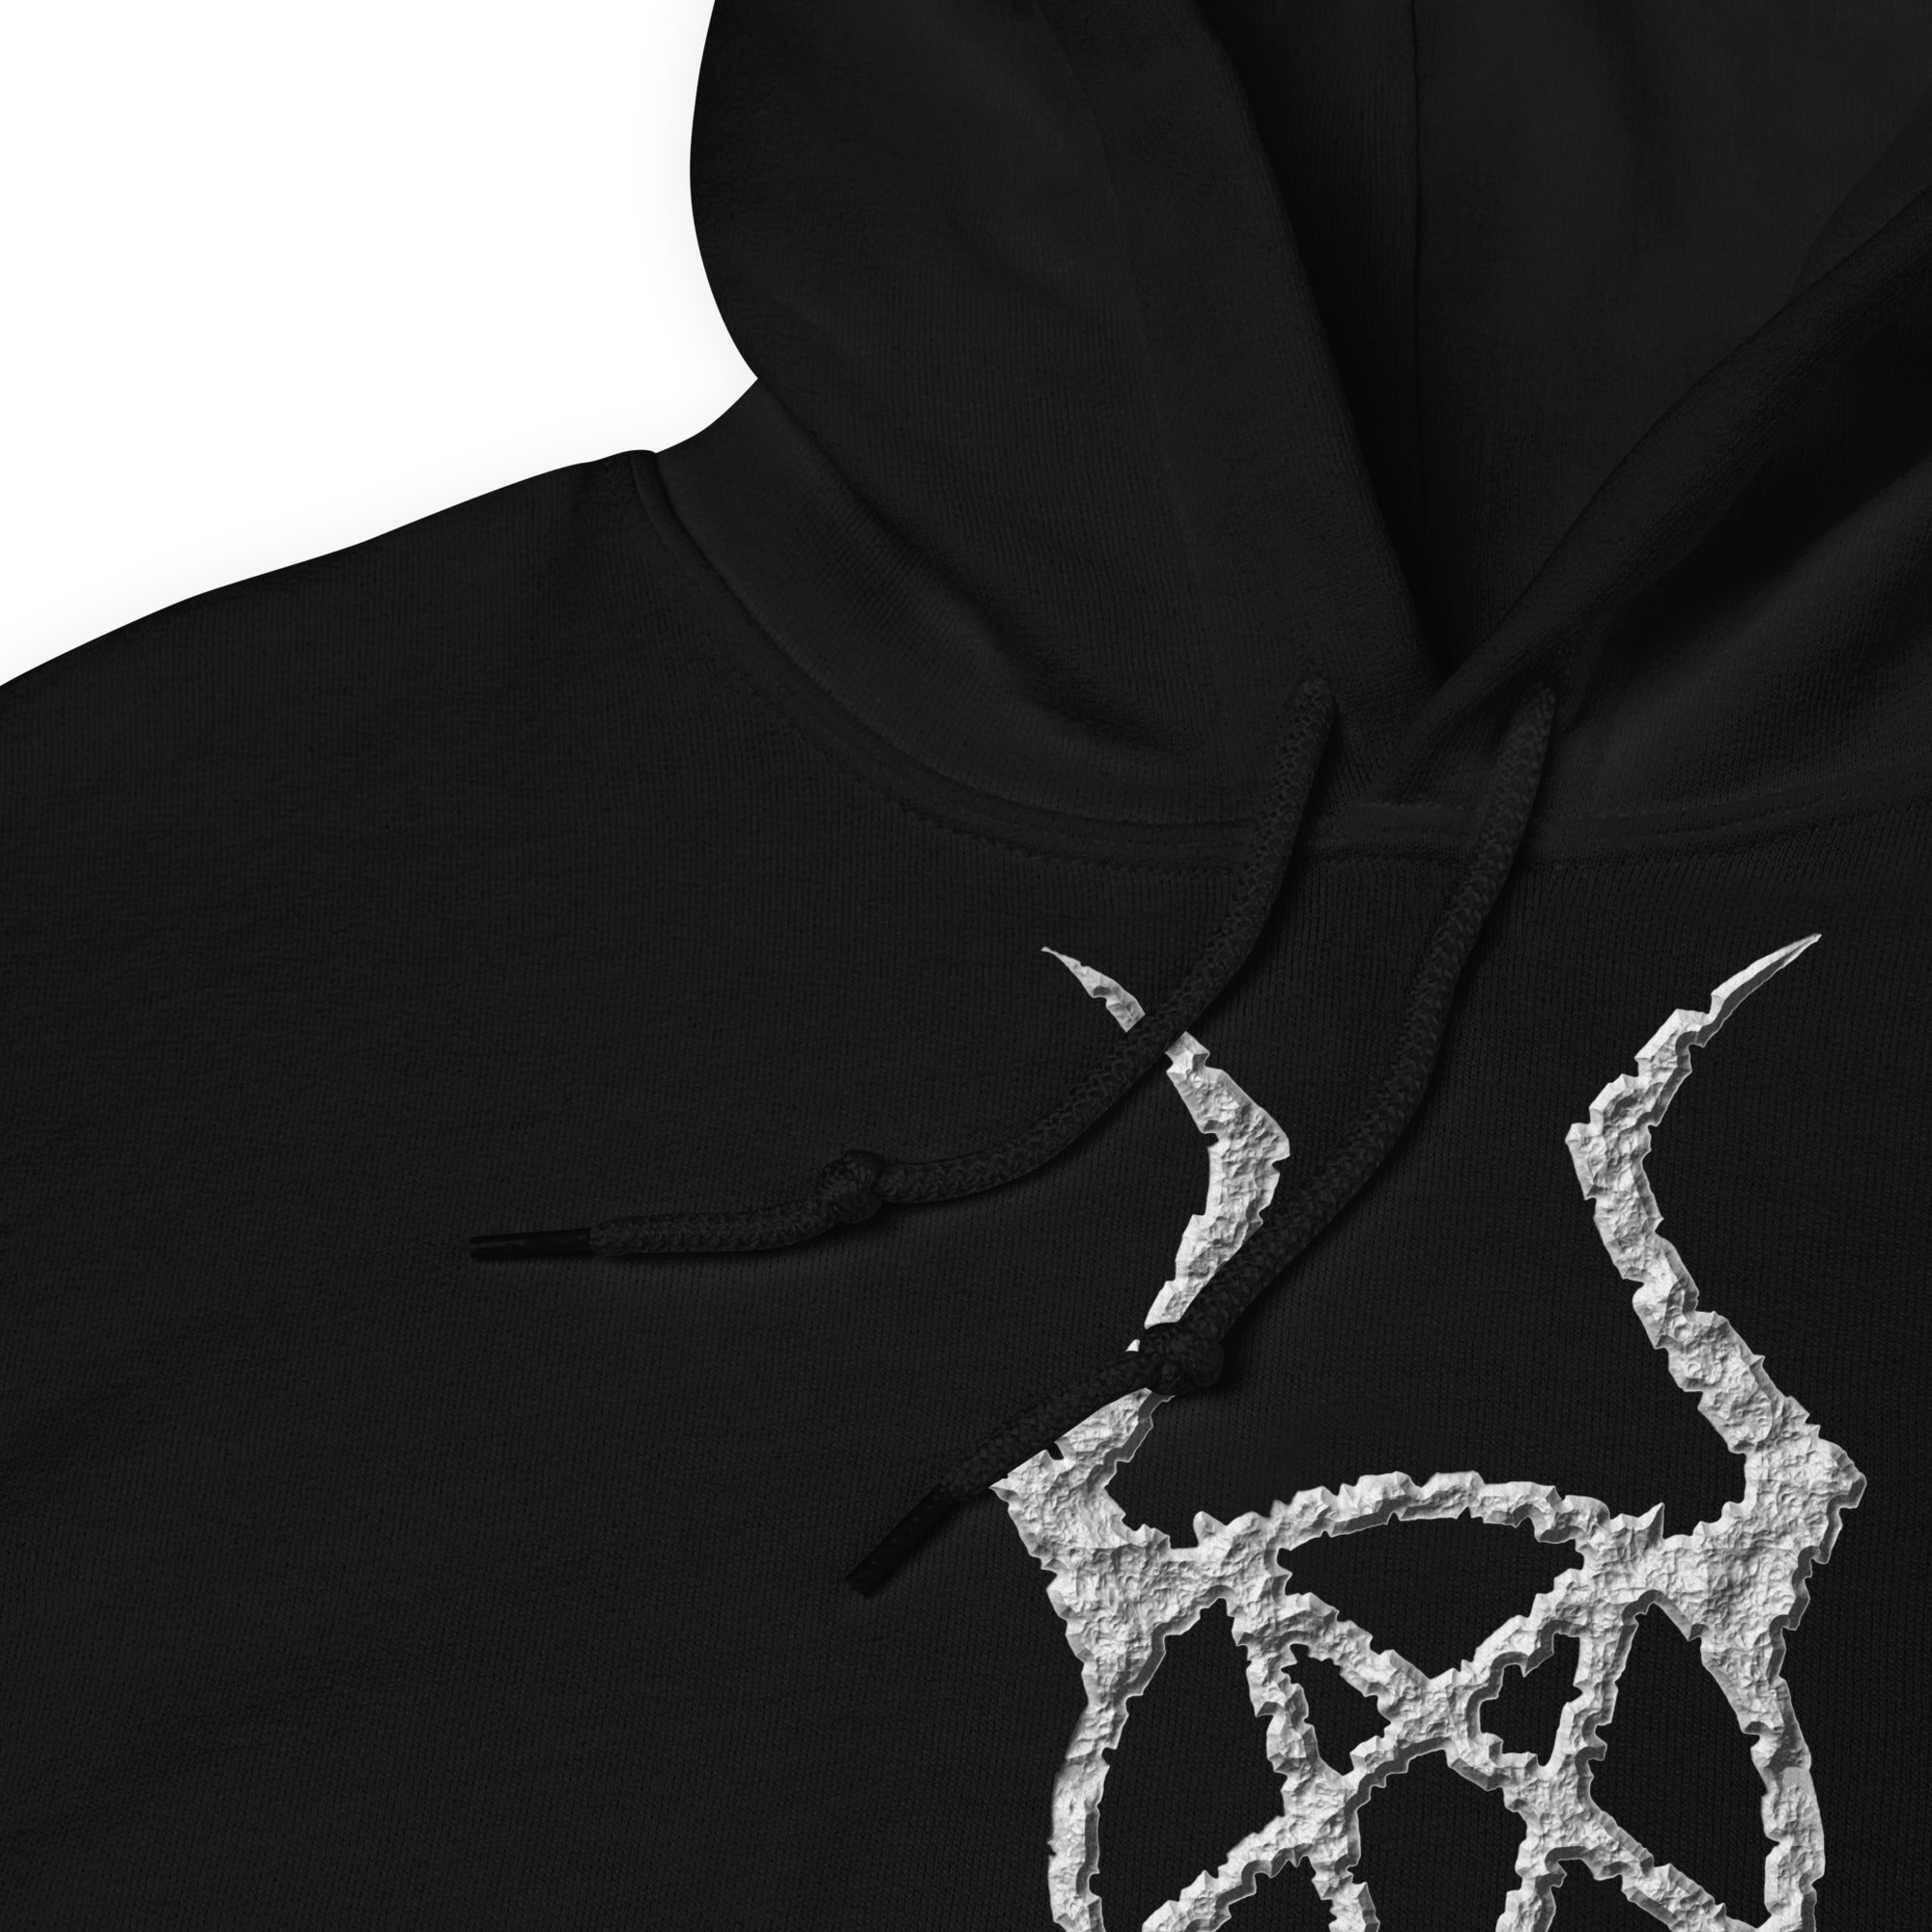 Ancient Stone Horned Pentacross Pentagram Cross Unisex Hoodie Sweatshirt - Edge of Life Designs